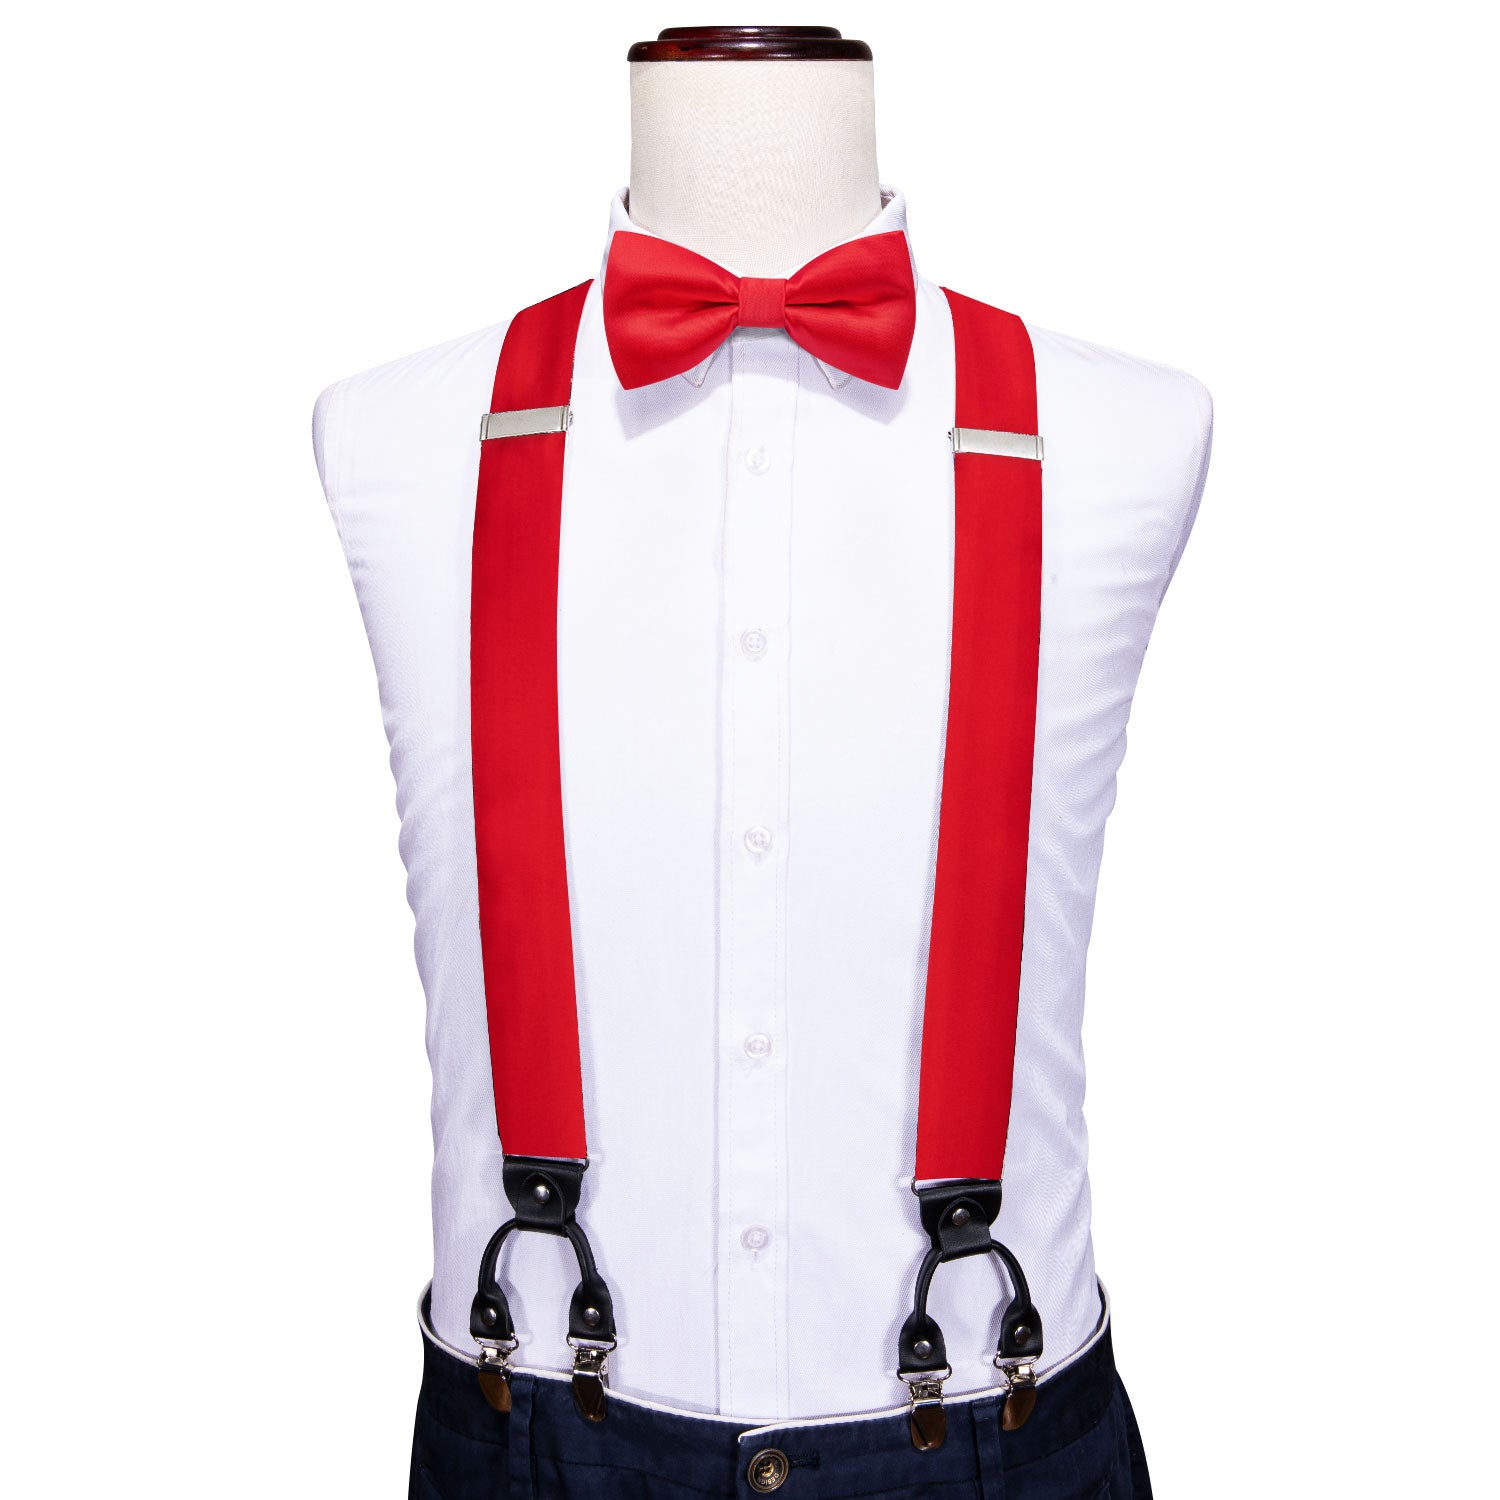 Red Tie Solid Y Back Adjustable Suspenders Bow Tie